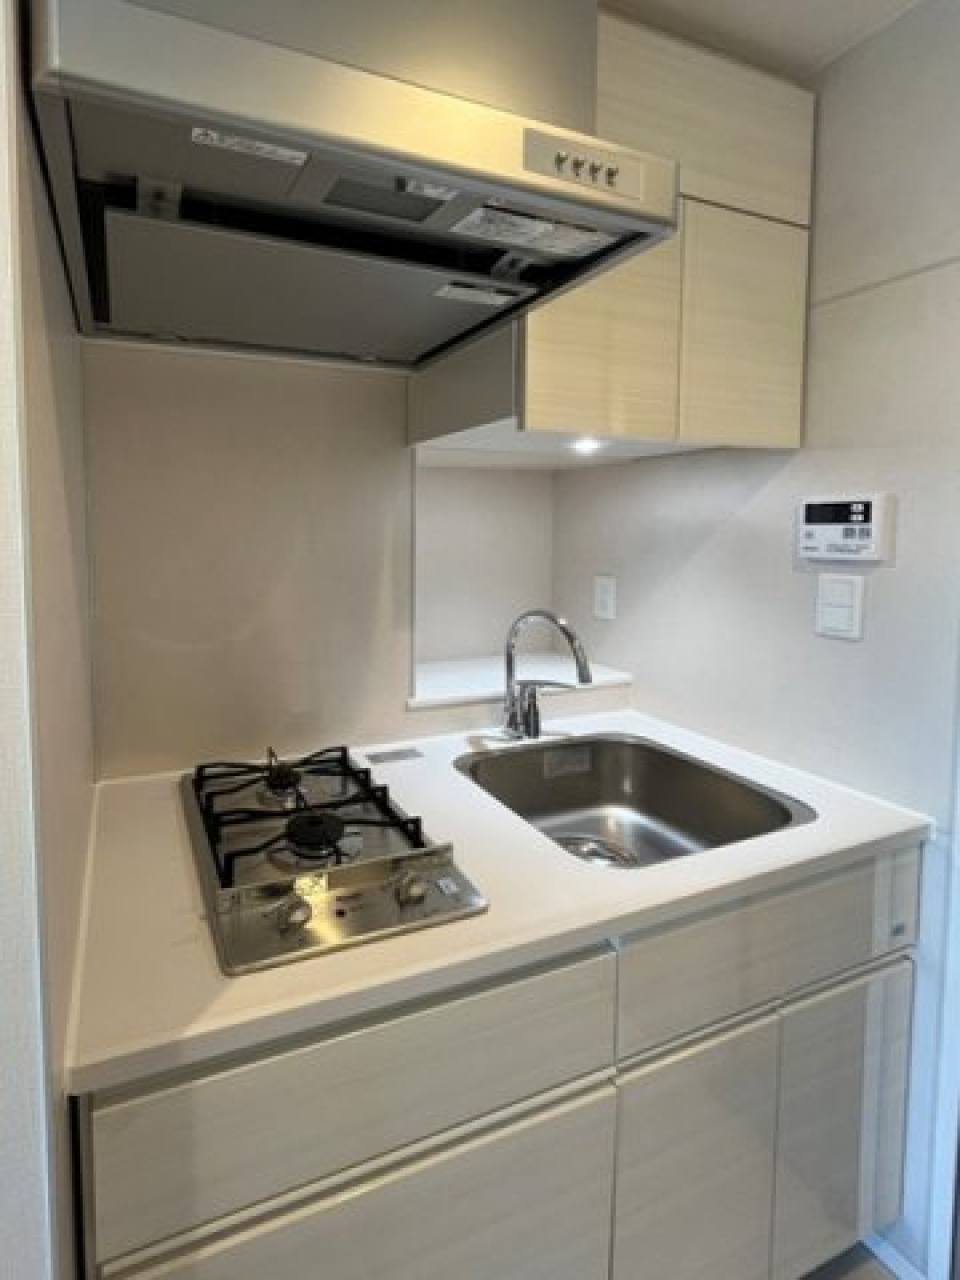 コンパクトなキッチンはお掃除が楽なのが特徴です。グリル付きのシステムキッチンです。
※写真は同タイプ住戸です。